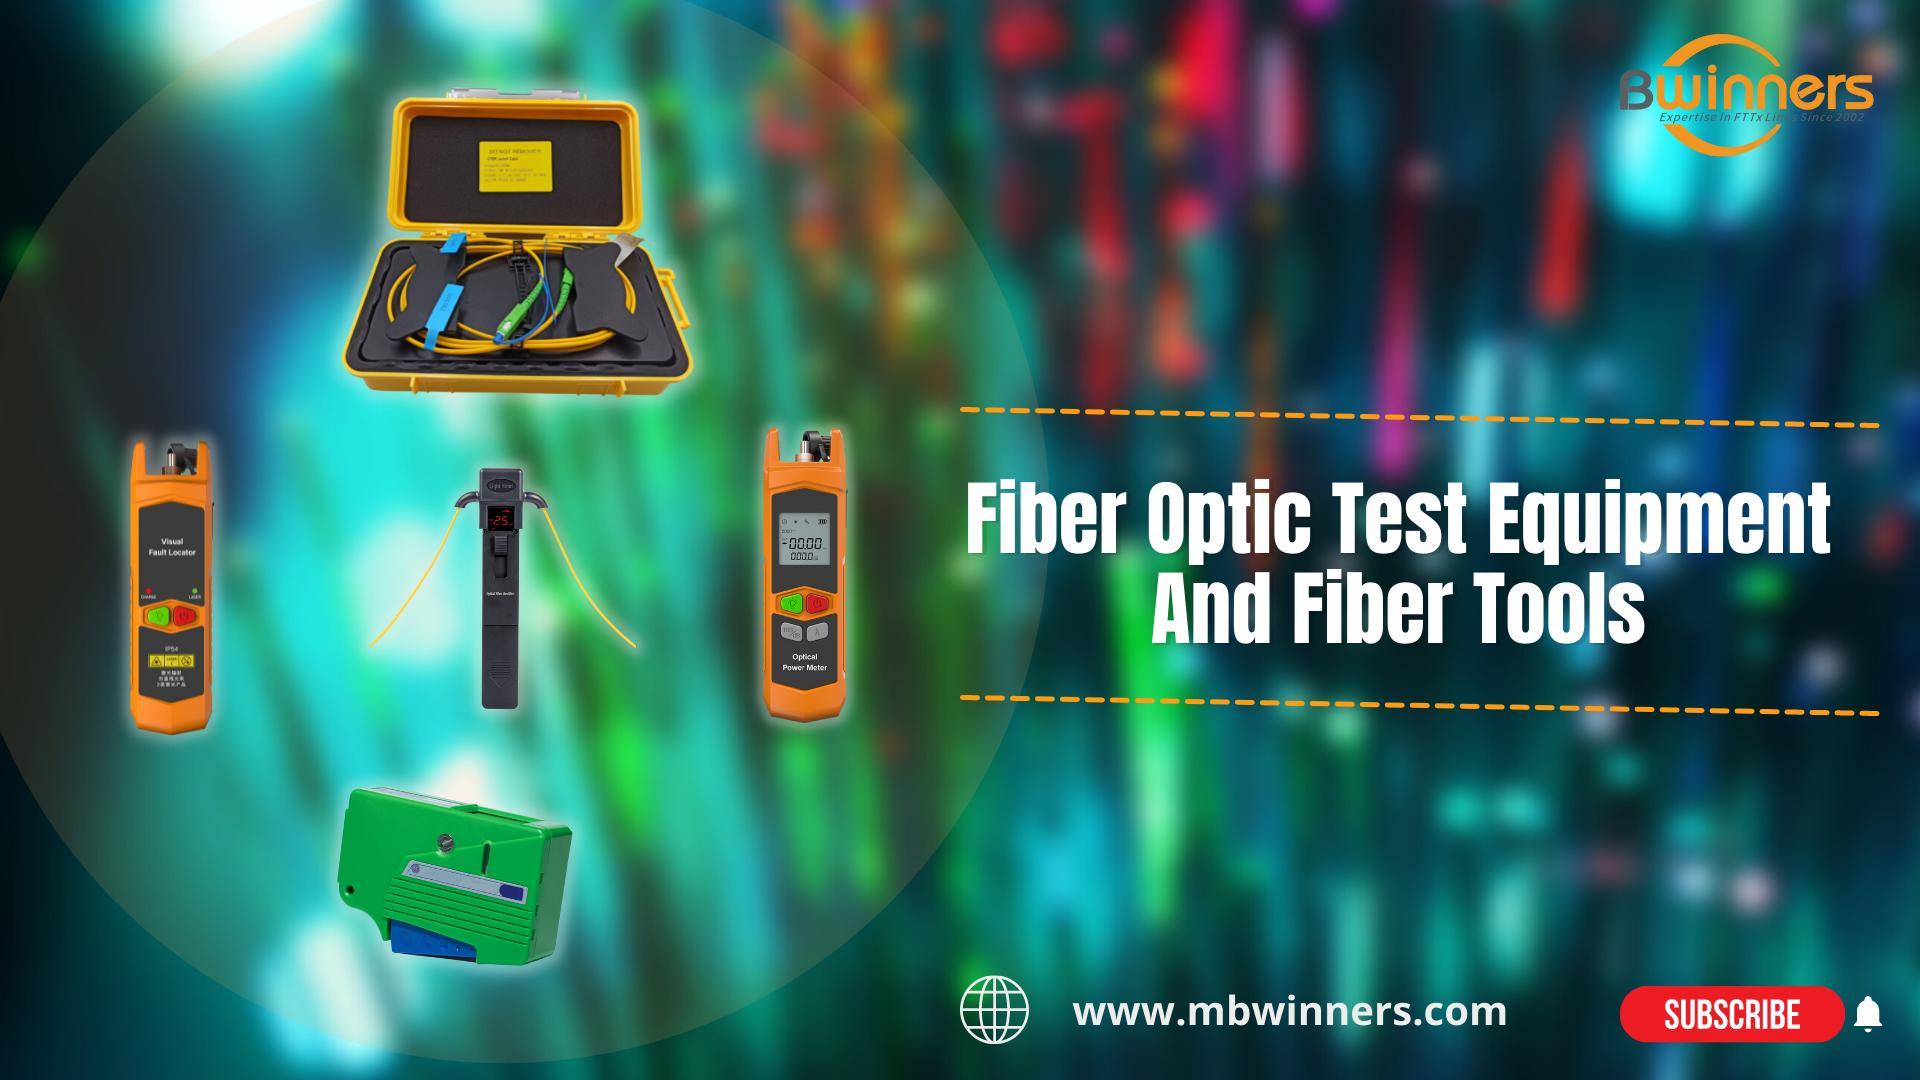 Caixa de lançamento de fibra BWN-OTDR-LC2 | MBN-OFI-35 Identificador de fibra ao vivo | Mbn-vfl-30-c fibra de vfl | Mbn-opm-mini mini medidor de energia | Limpador de fibra MBN-OC | Equipamento de teste de fibra óptica e ferramentas de fibra | #Ftth #fttx